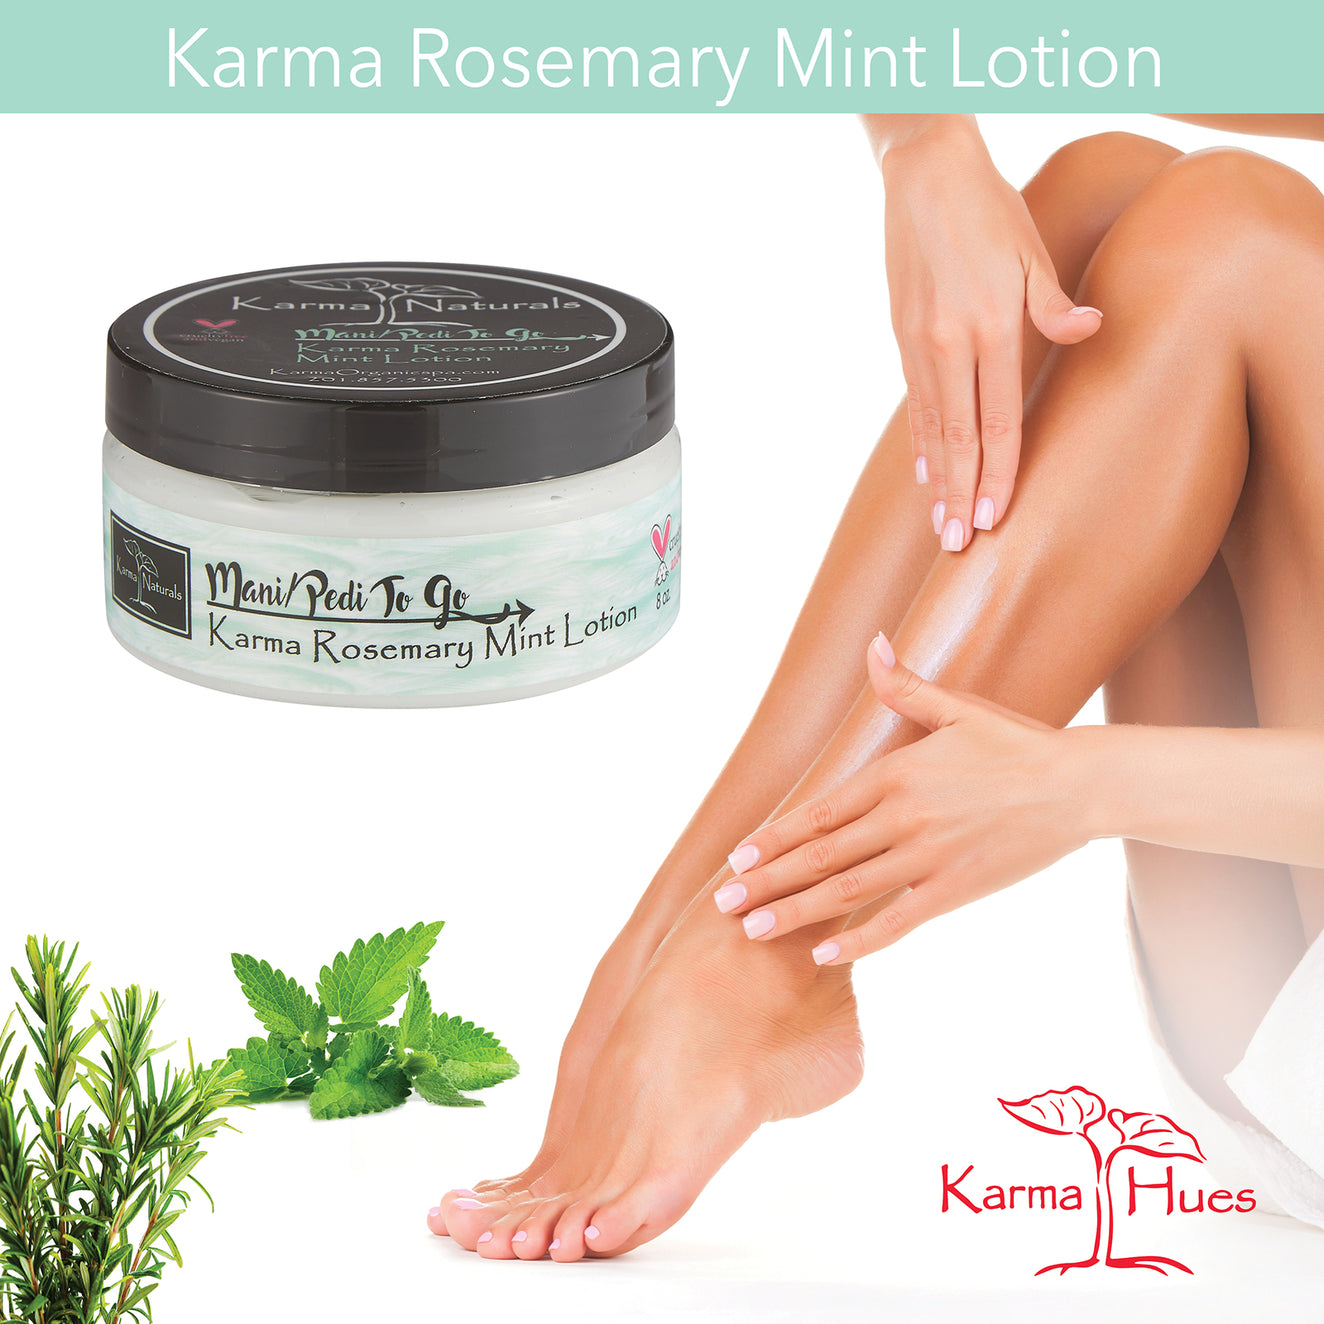 Karma Rosemary Mint Lotion